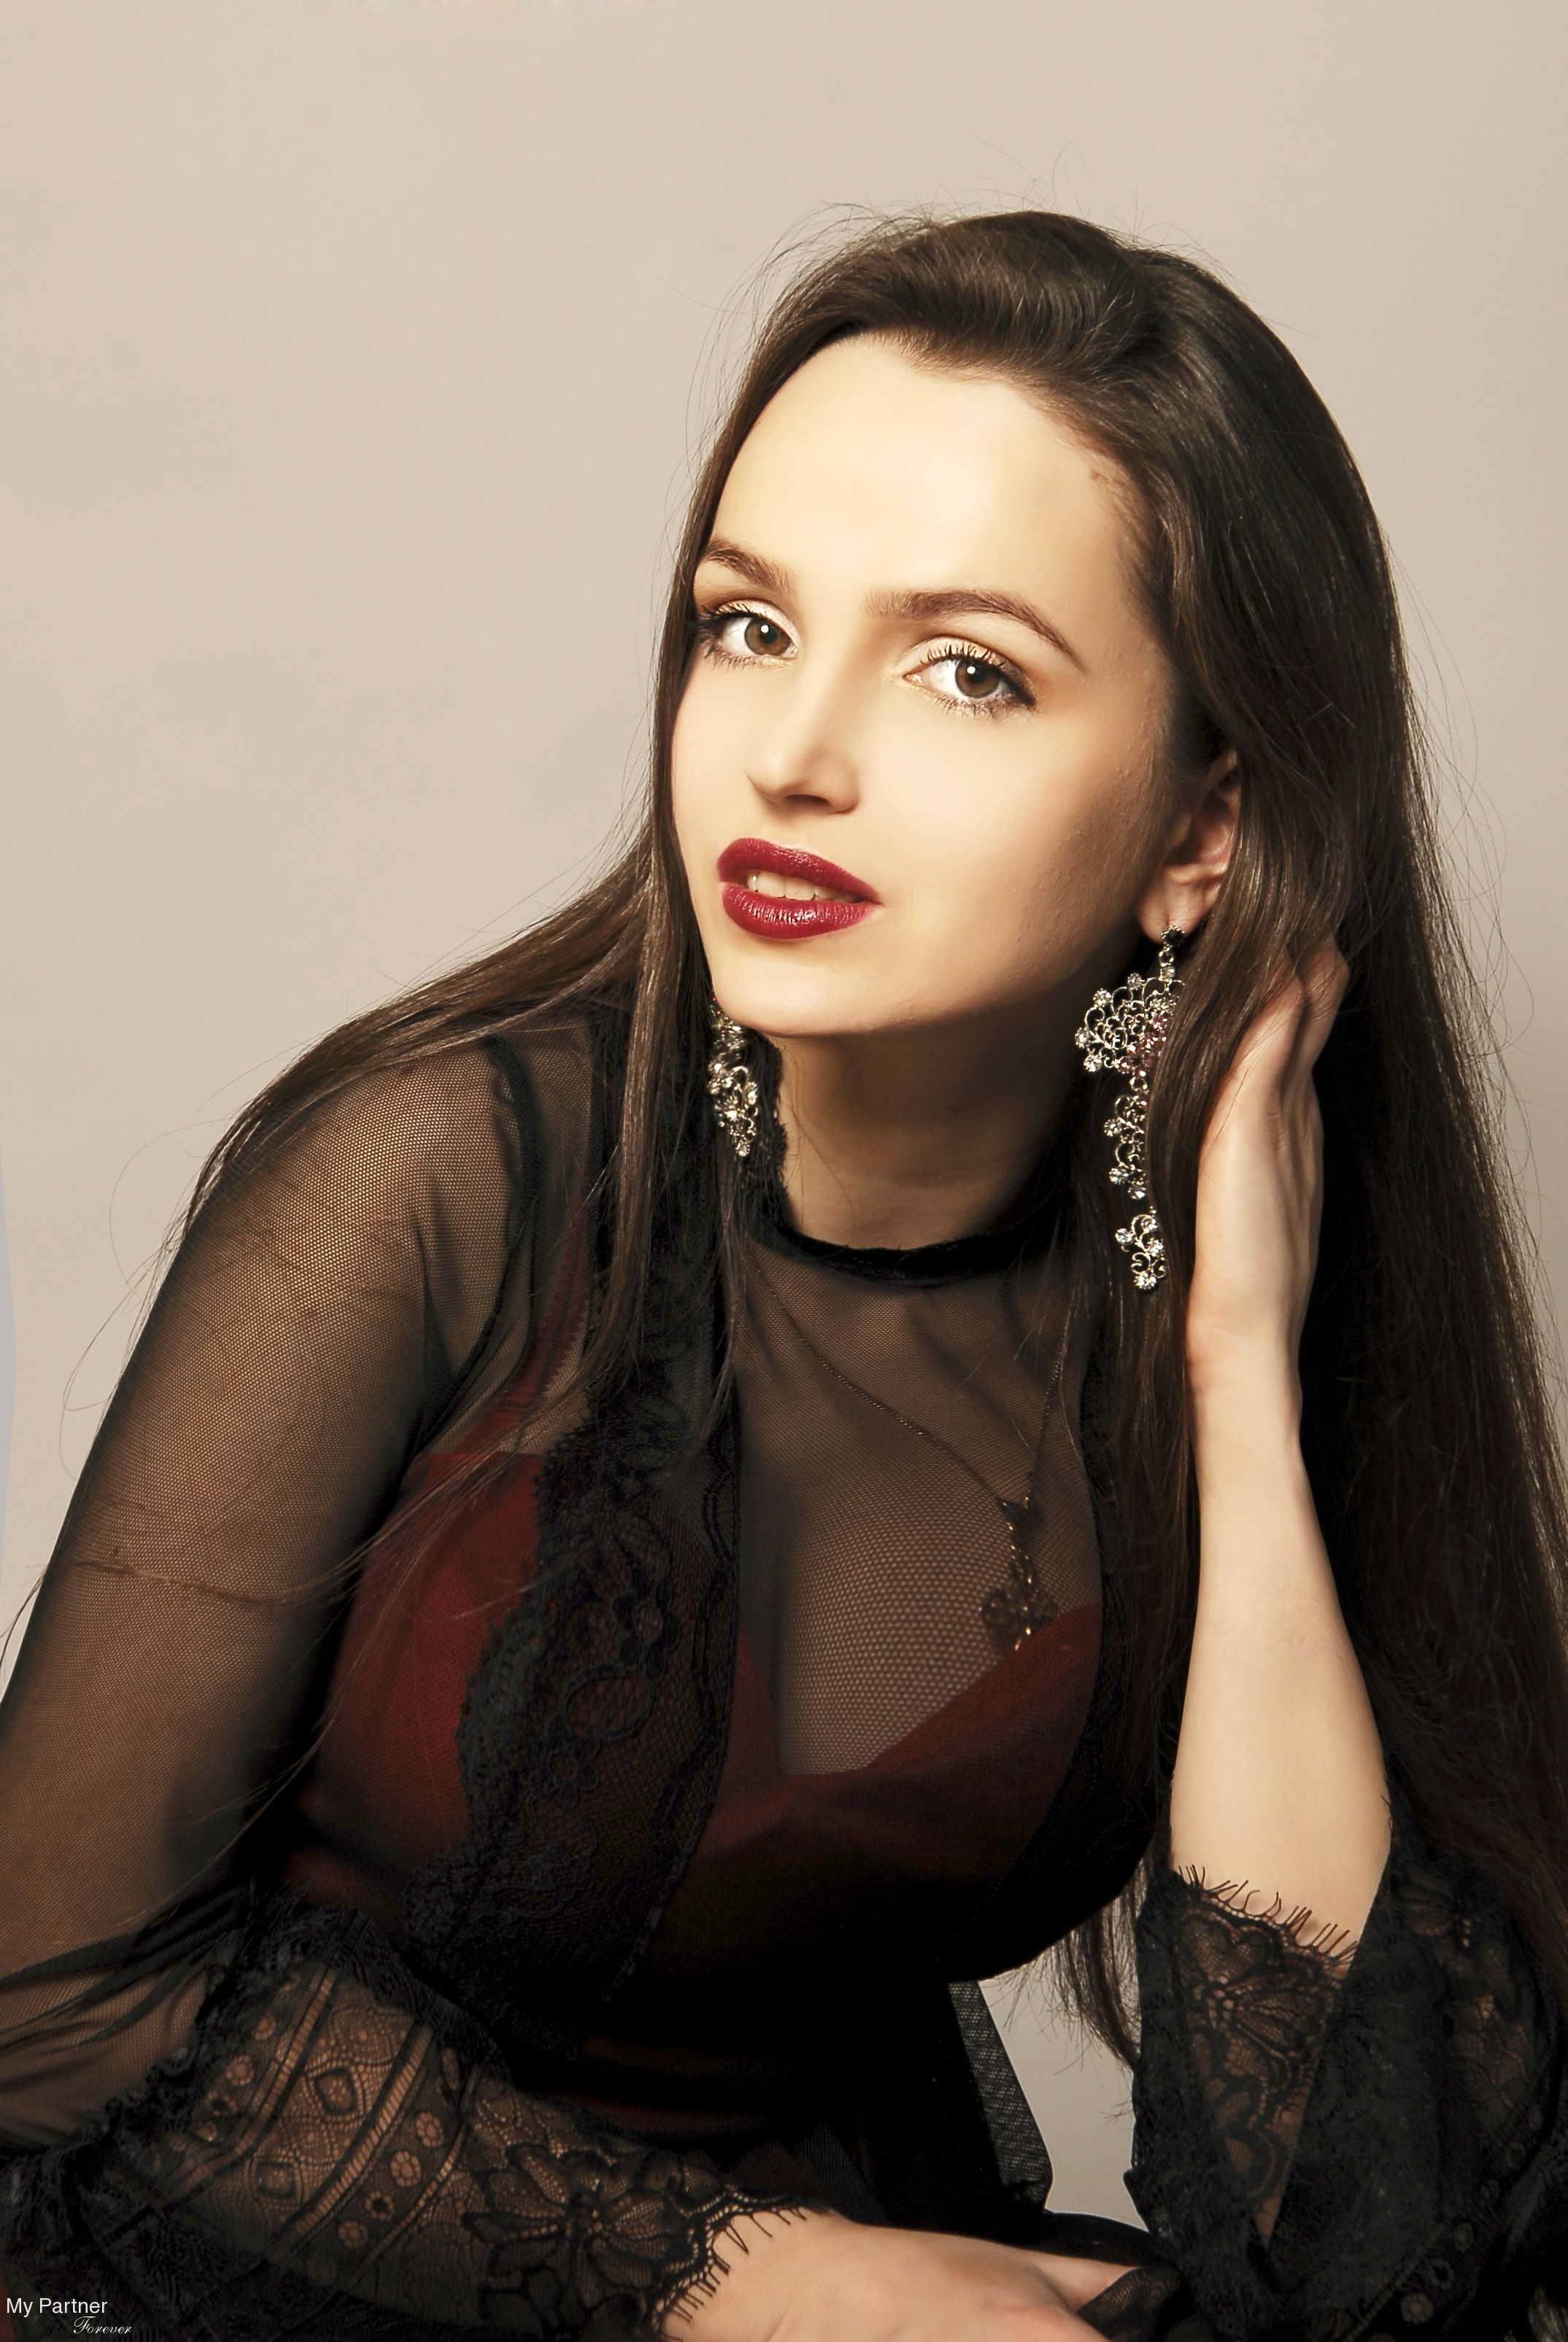 Dating Site to Meet Gorgeous Ukrainian Woman Galina from Kiev, Ukraine